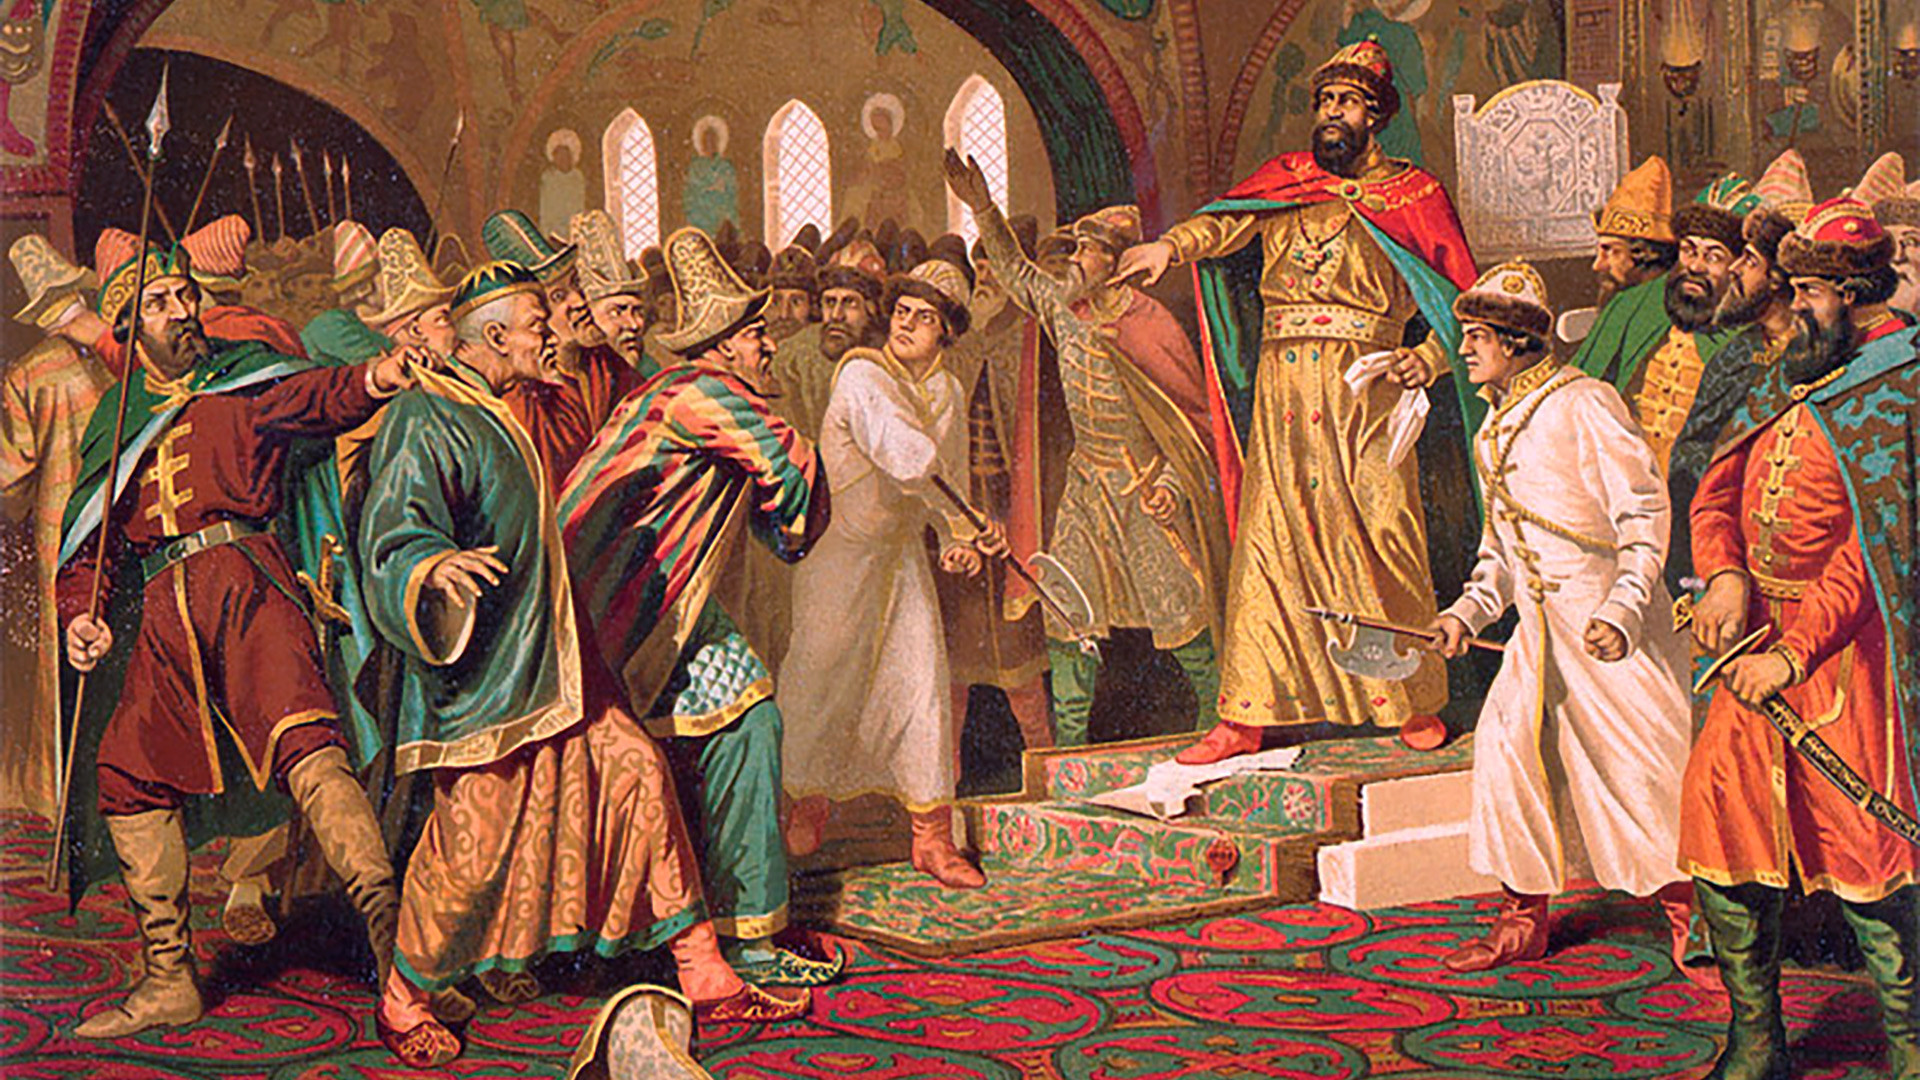 Иван Трети го кине писмото на ханот. Според легендата, Иван Трети го искинал писмото на Ахмат во кое тој побарал да се плати данокот.